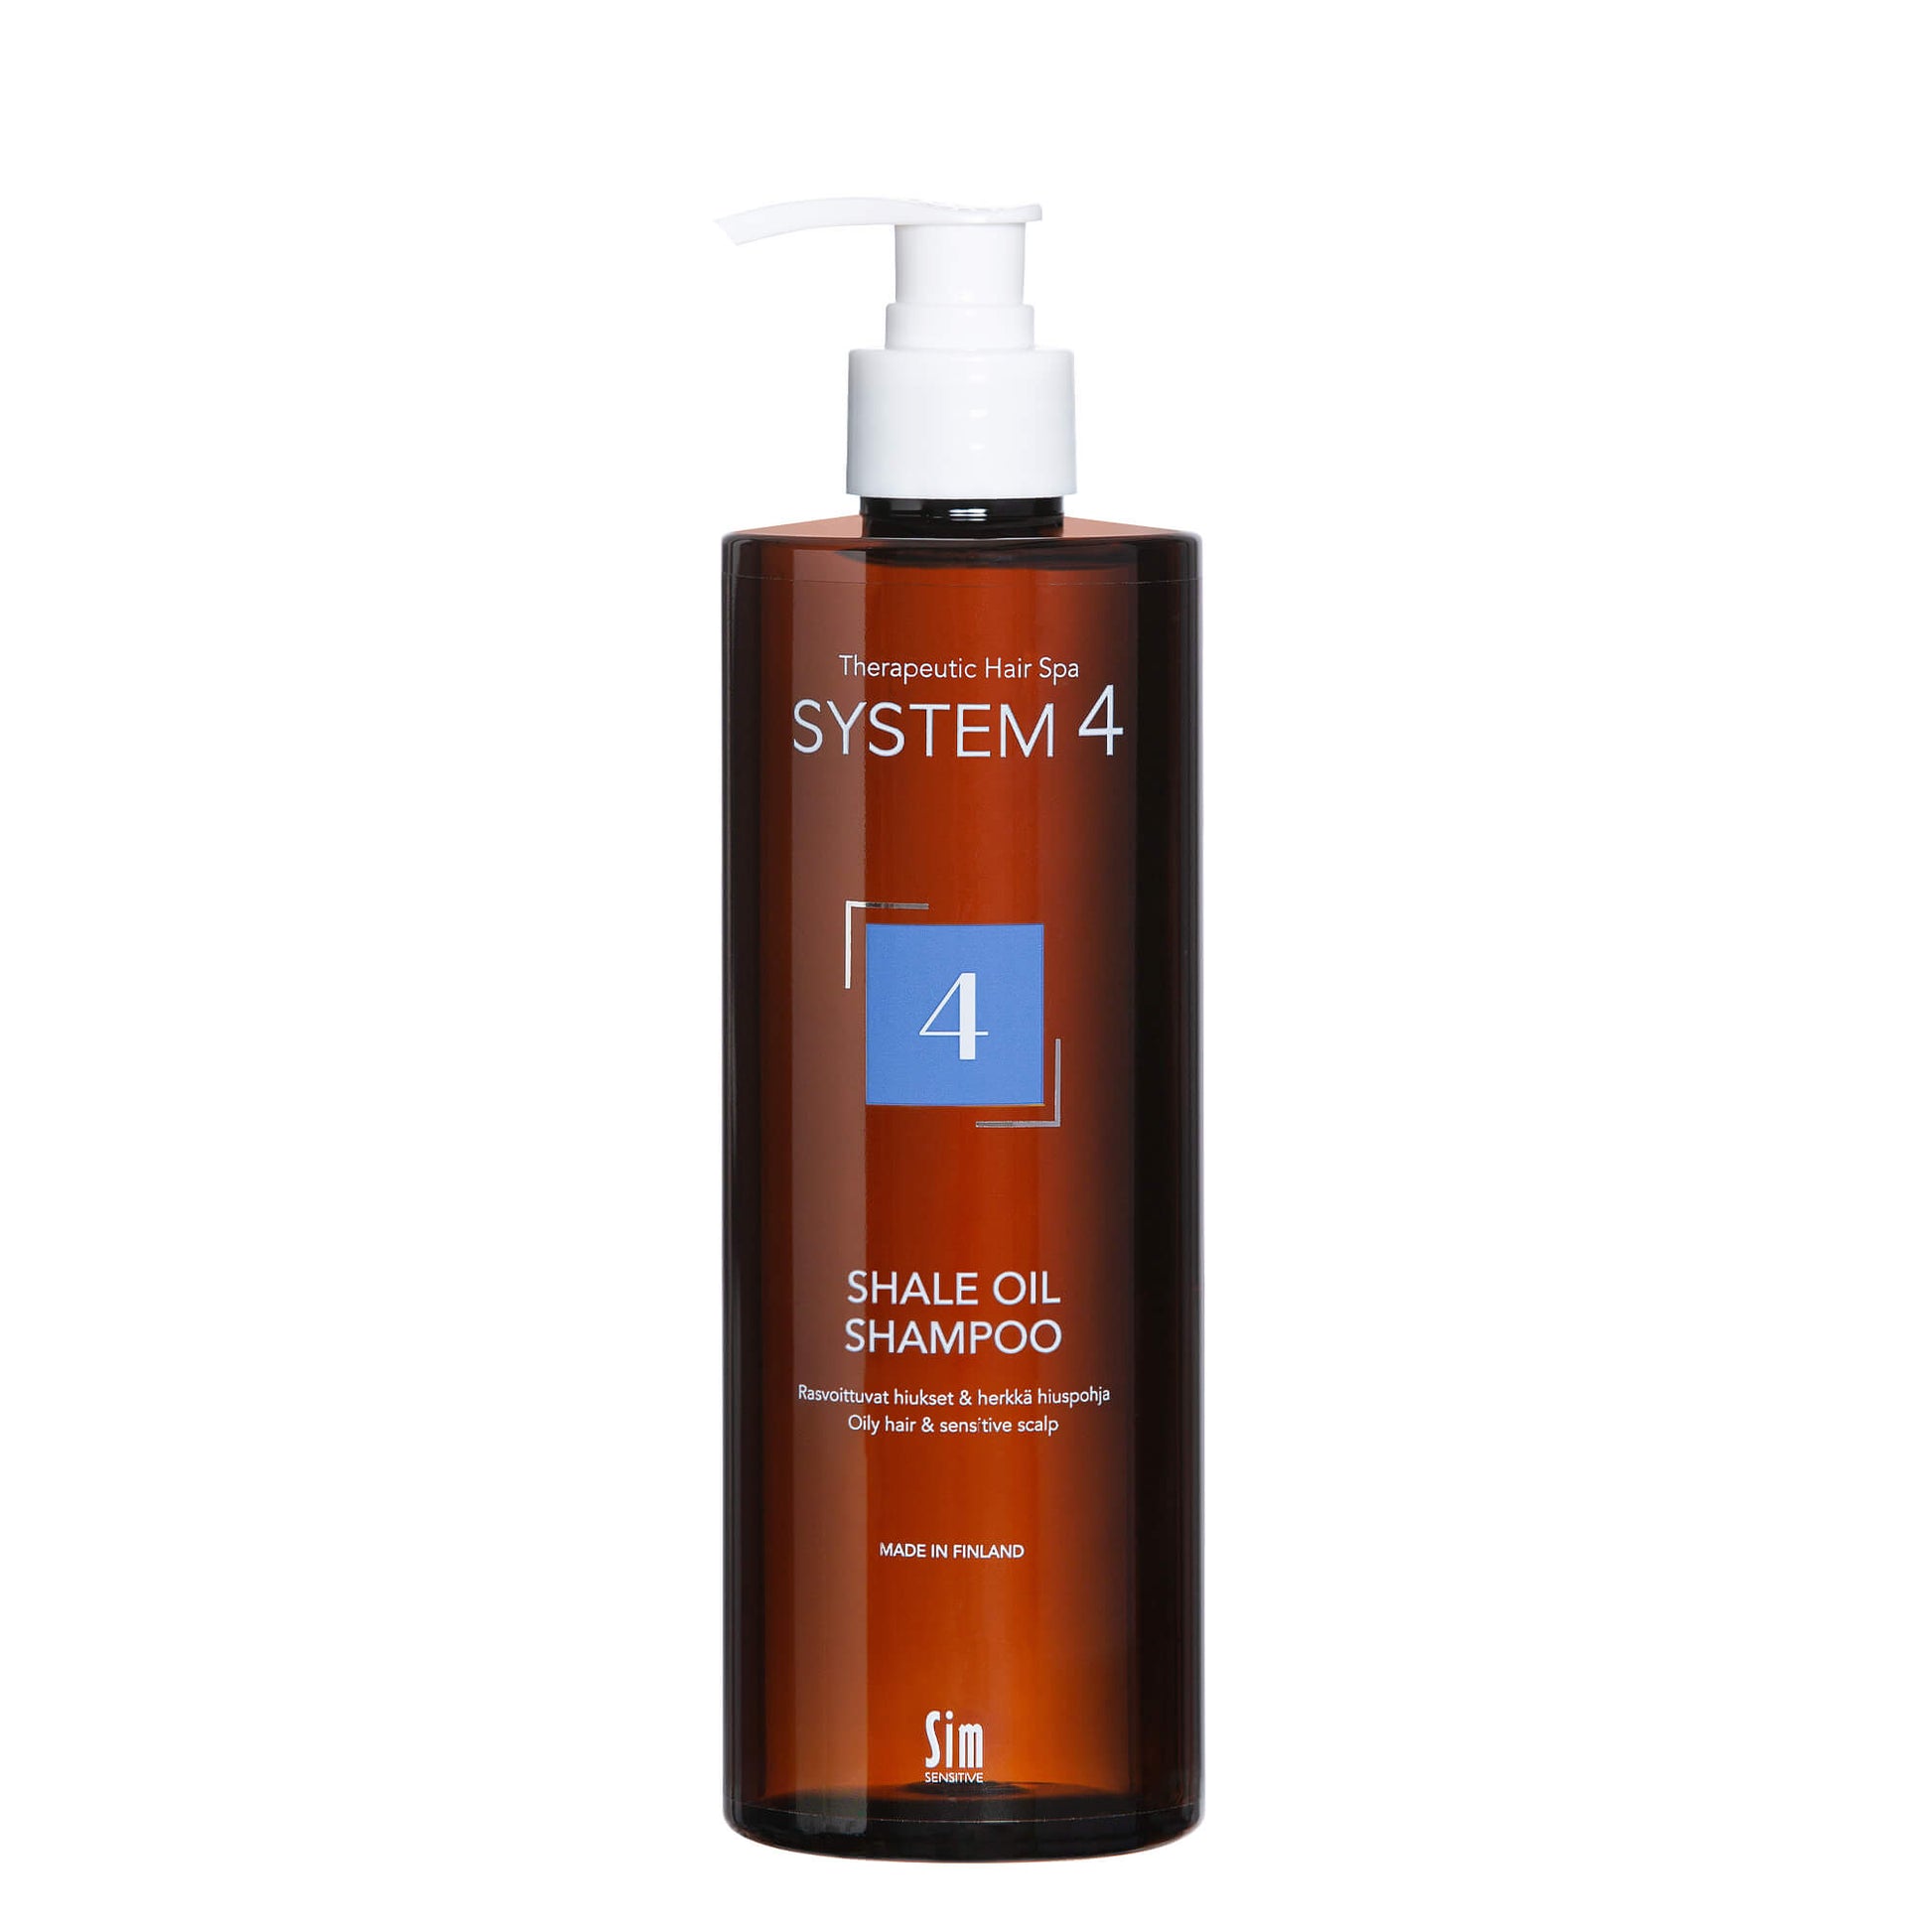 SYSTEM 4 Shale Oil Shampoo 4 ylirasvoittuville hiuksille ja herkälle hiuspohjalle 500 ml